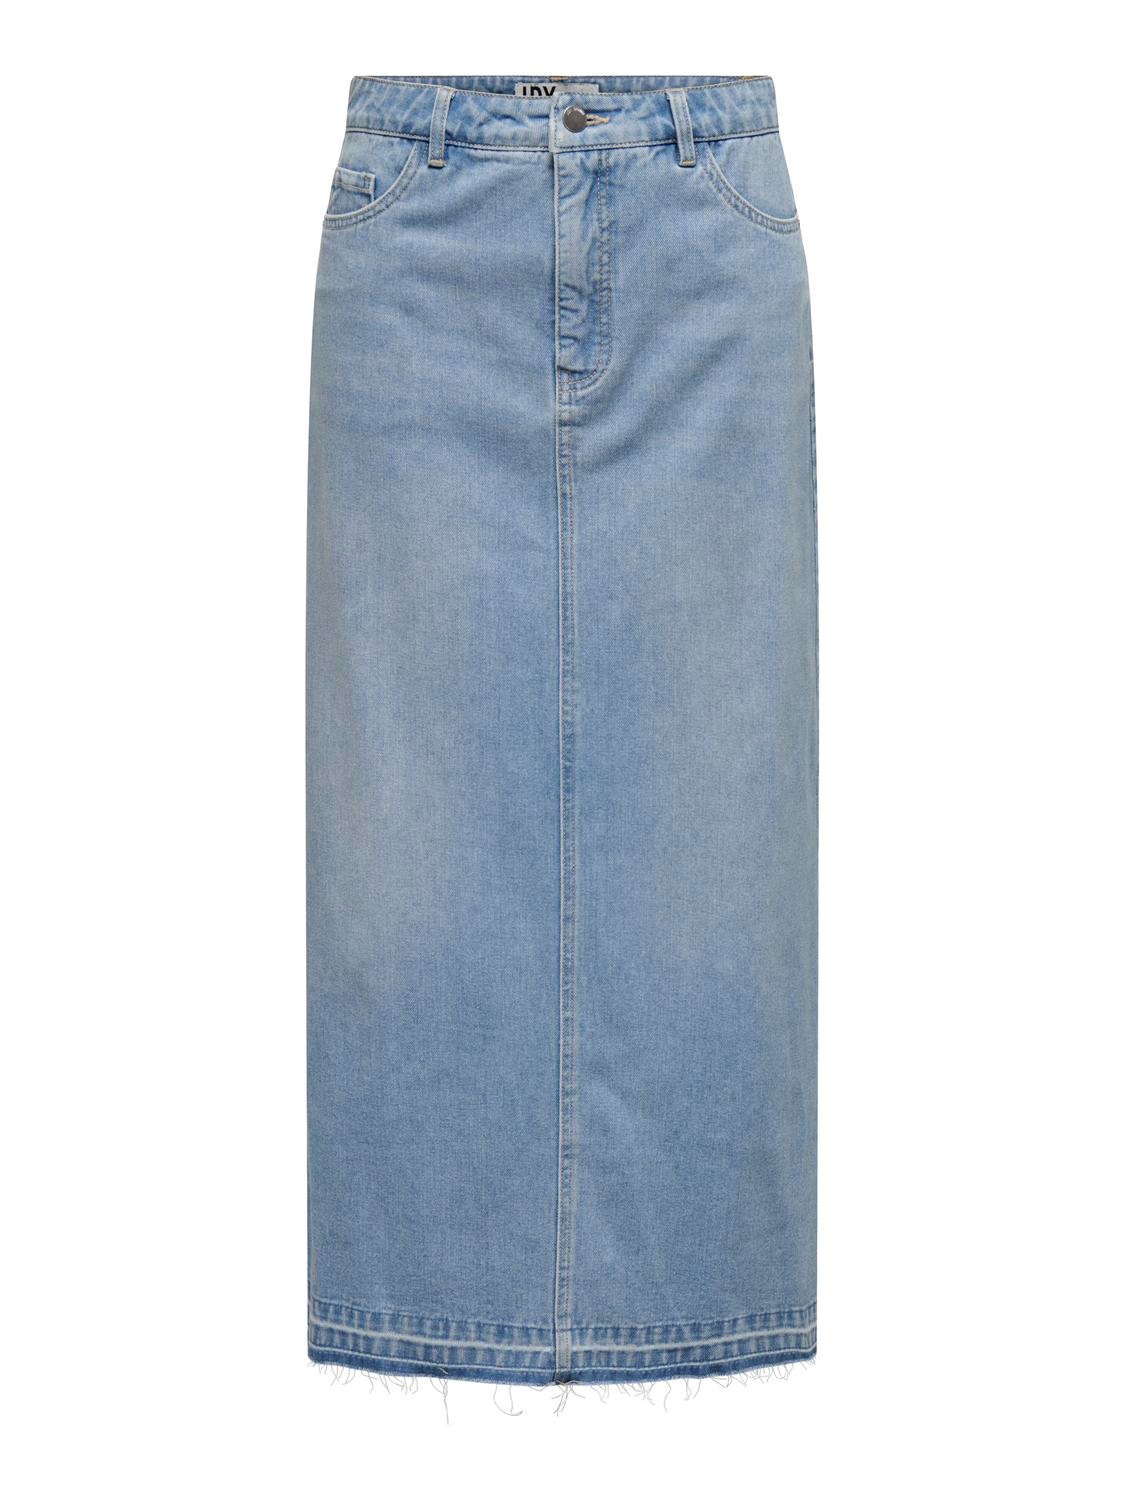 ONLY High waist Long skirt -Light Blue Denim - 15327478